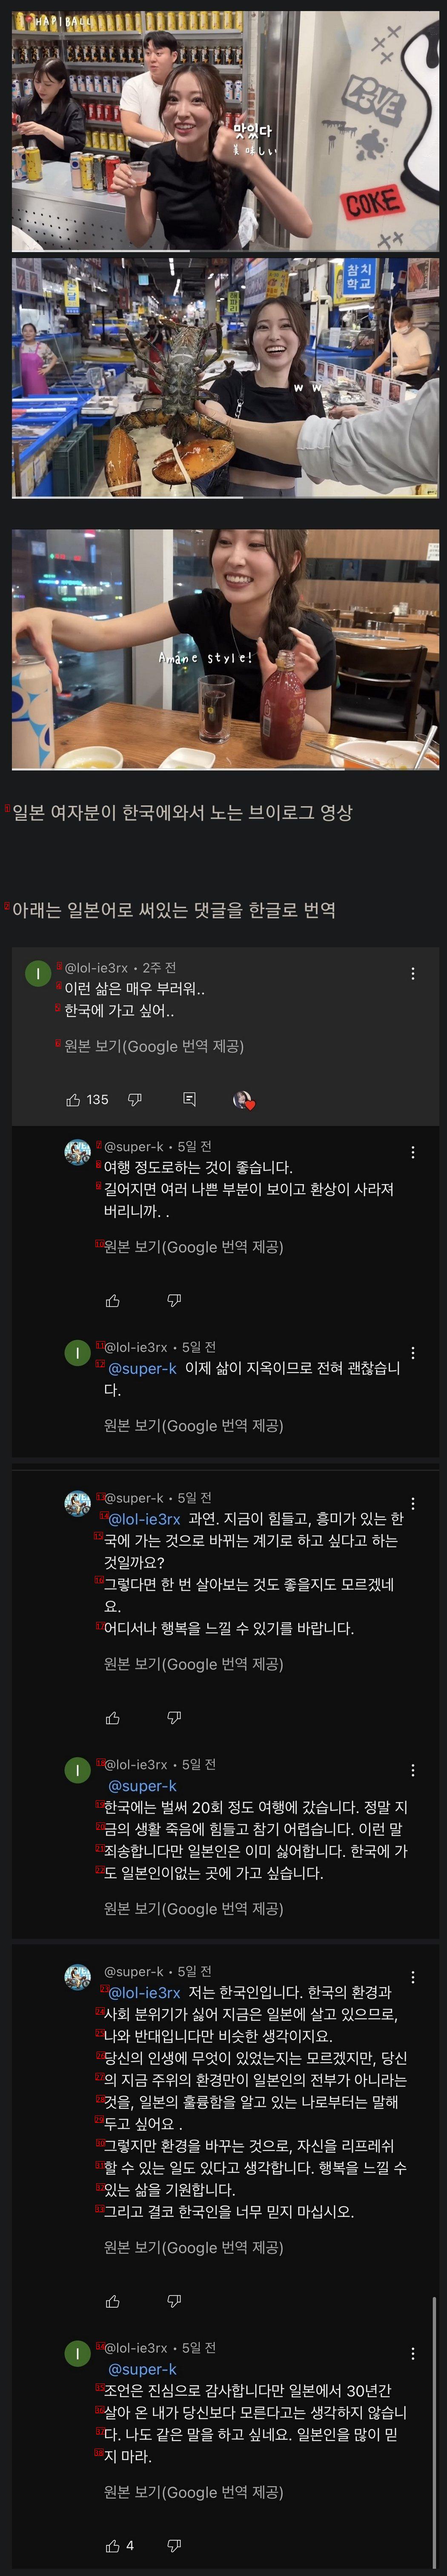 ユーチューブでコメントで論争する韓国人と日本人